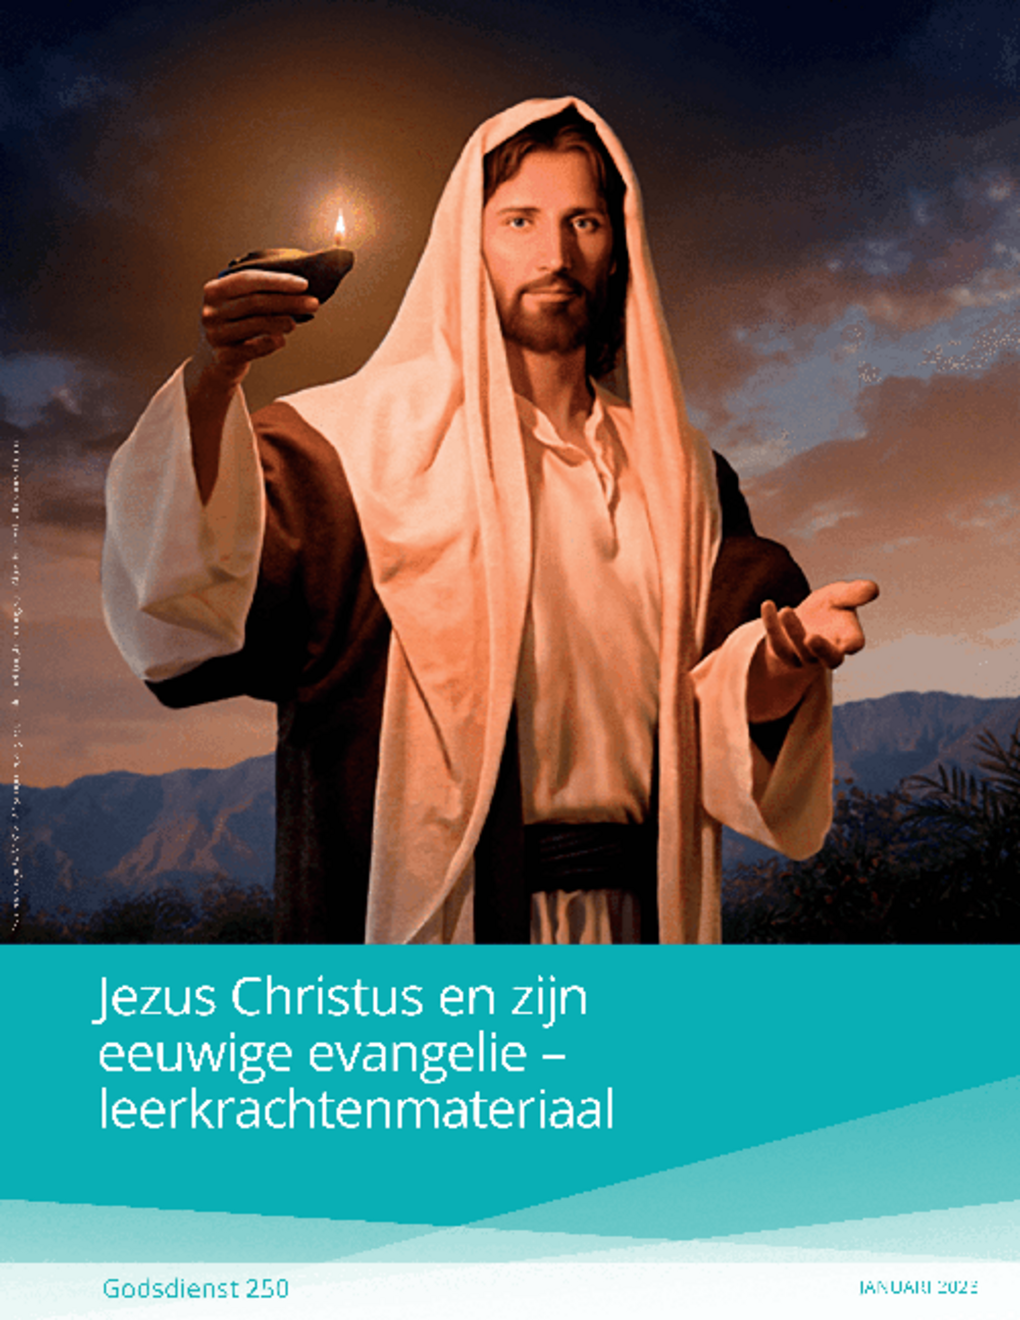 Jezus Christus en zijn eeuwige evangelie – leerkrachtenmateriaal (Godsdienst 250)